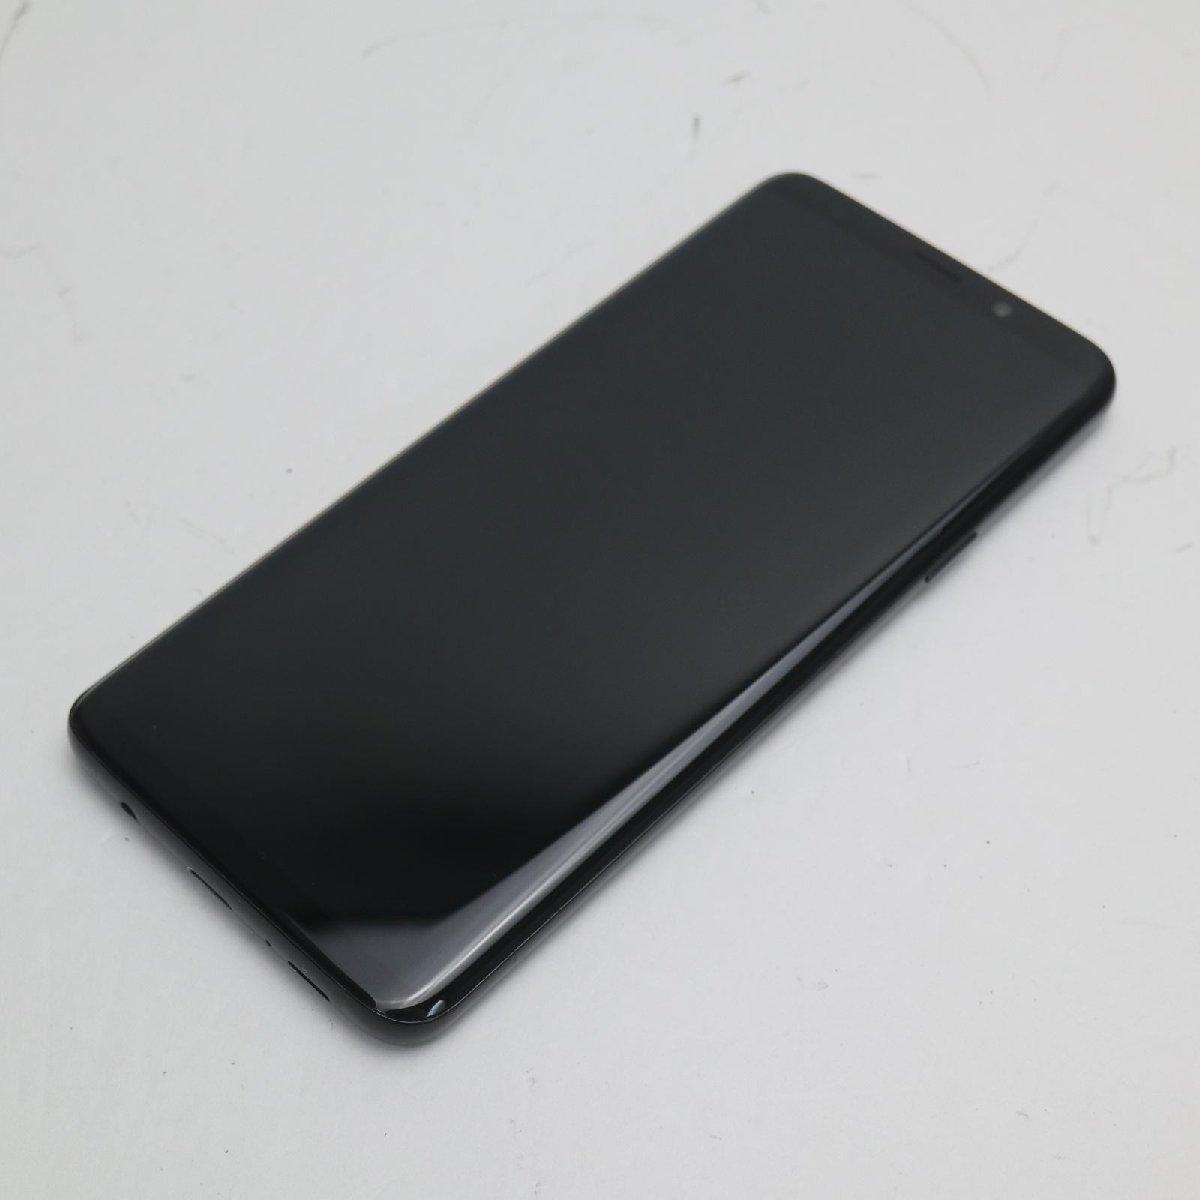 公式の スマホ ブラック S9+ Galaxy SC-03K 超美品 即日発送 土日祝